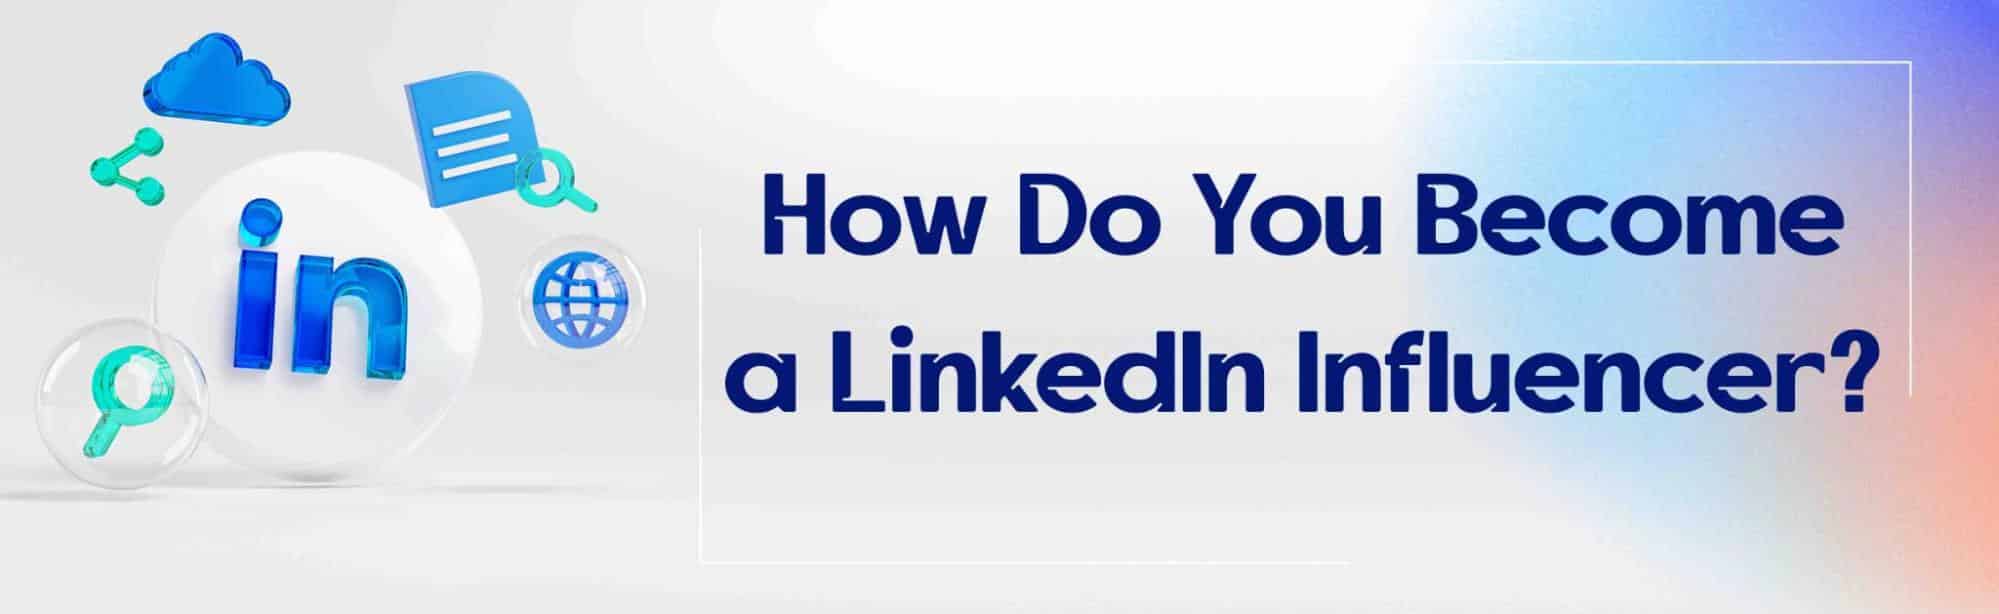 How Do You Become a LinkedIn Influencer?